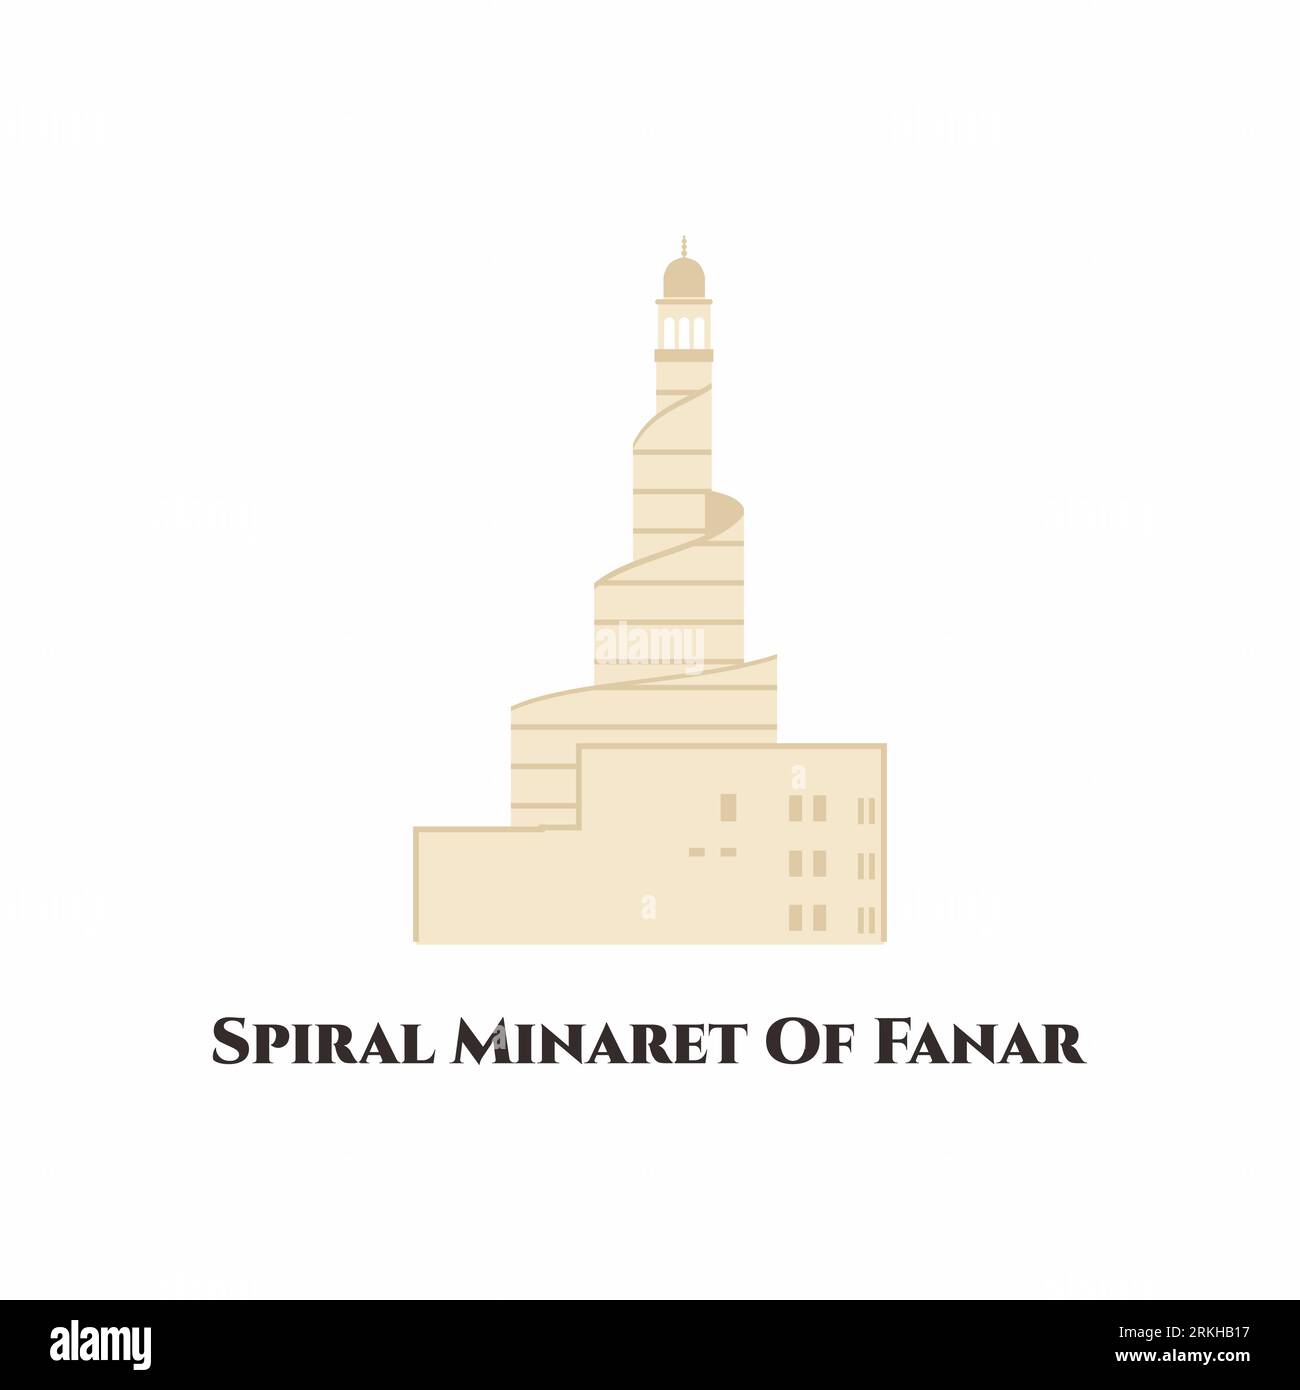 Das Spiral-Minarett von Fanar. Es liegt in der Nähe von Doha Corniche. Dieses Hotel hat ein einzigartiges Minarett-Design. Besuchen Sie unbedingt die große Moschee des Staates. F Stock Vektor